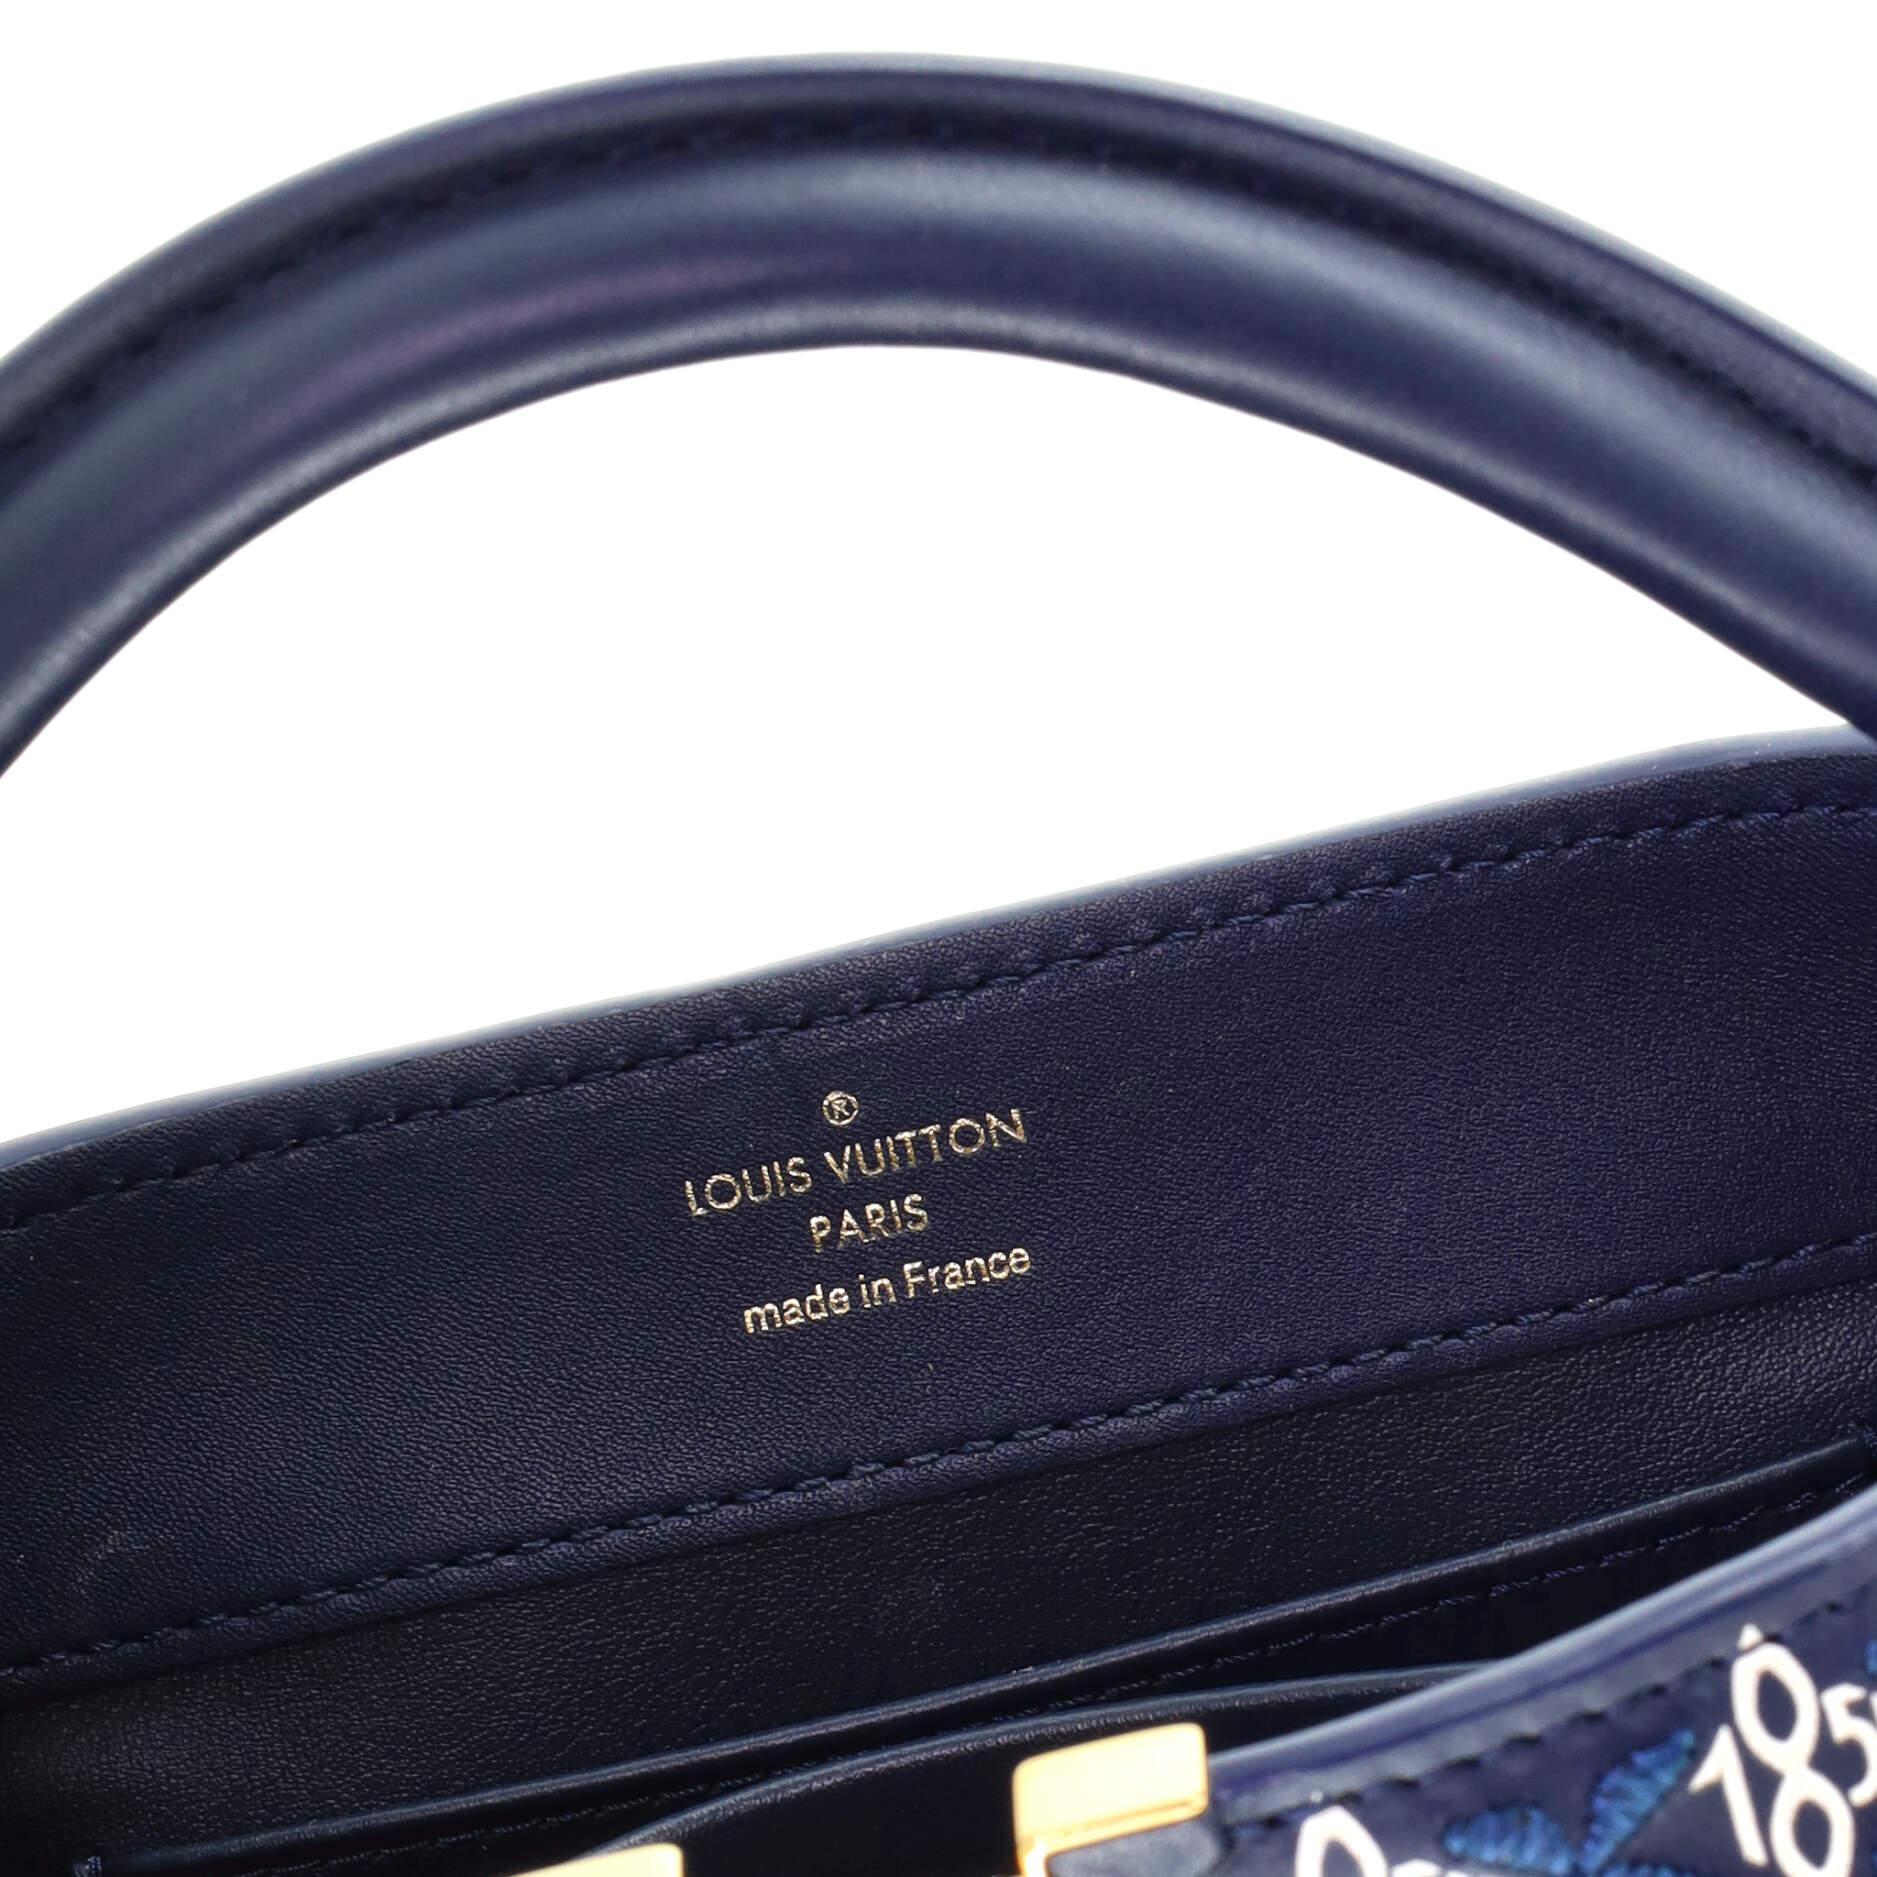 Women's or Men's Louis Vuitton Capucines Bag Limited Edition Since 1854 Monogram Calfskin Mini